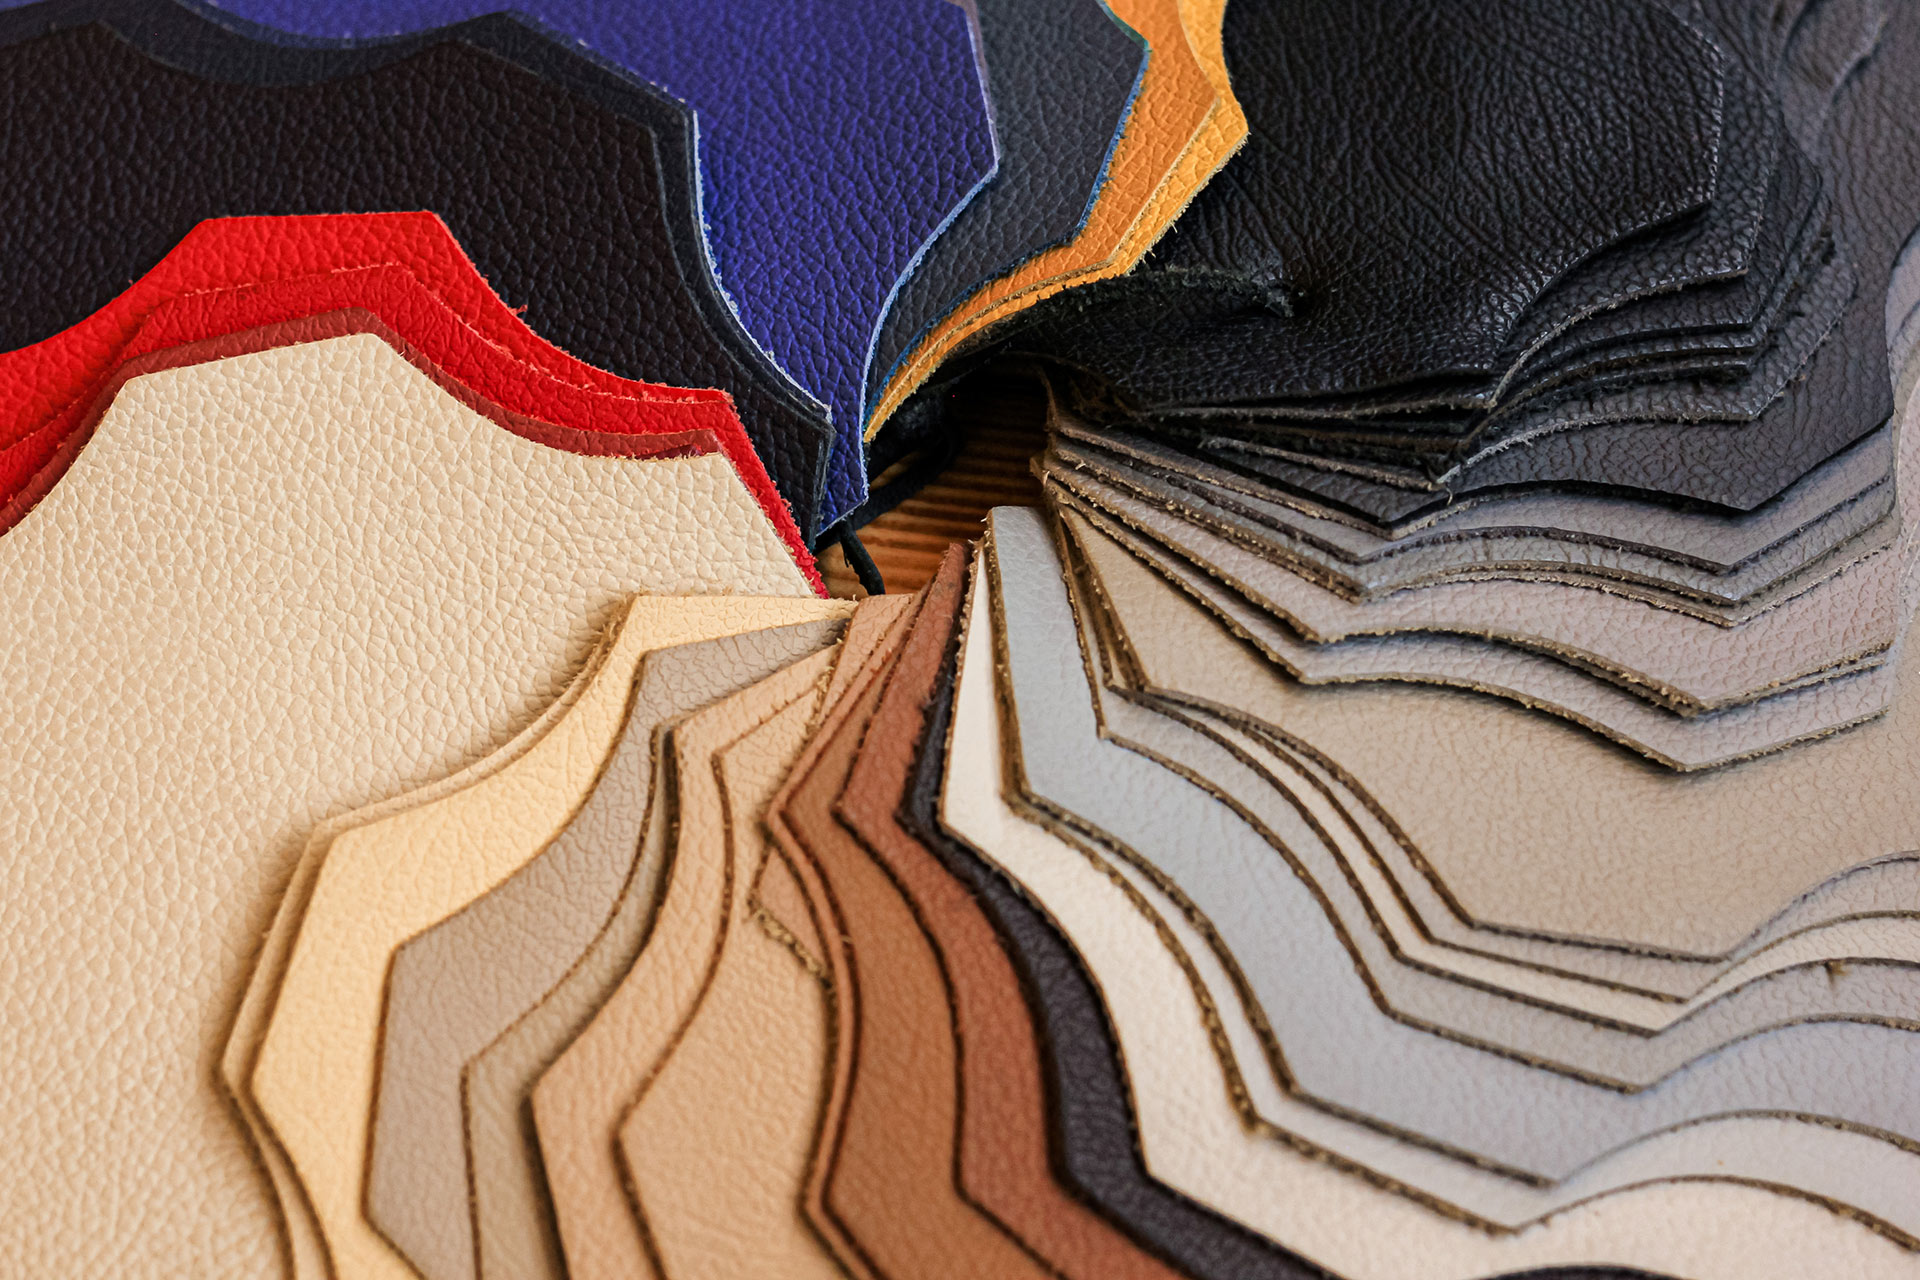 Muestras de piel multicolor textura natural-Mostratex - Muestrario de Telas e Imprenta